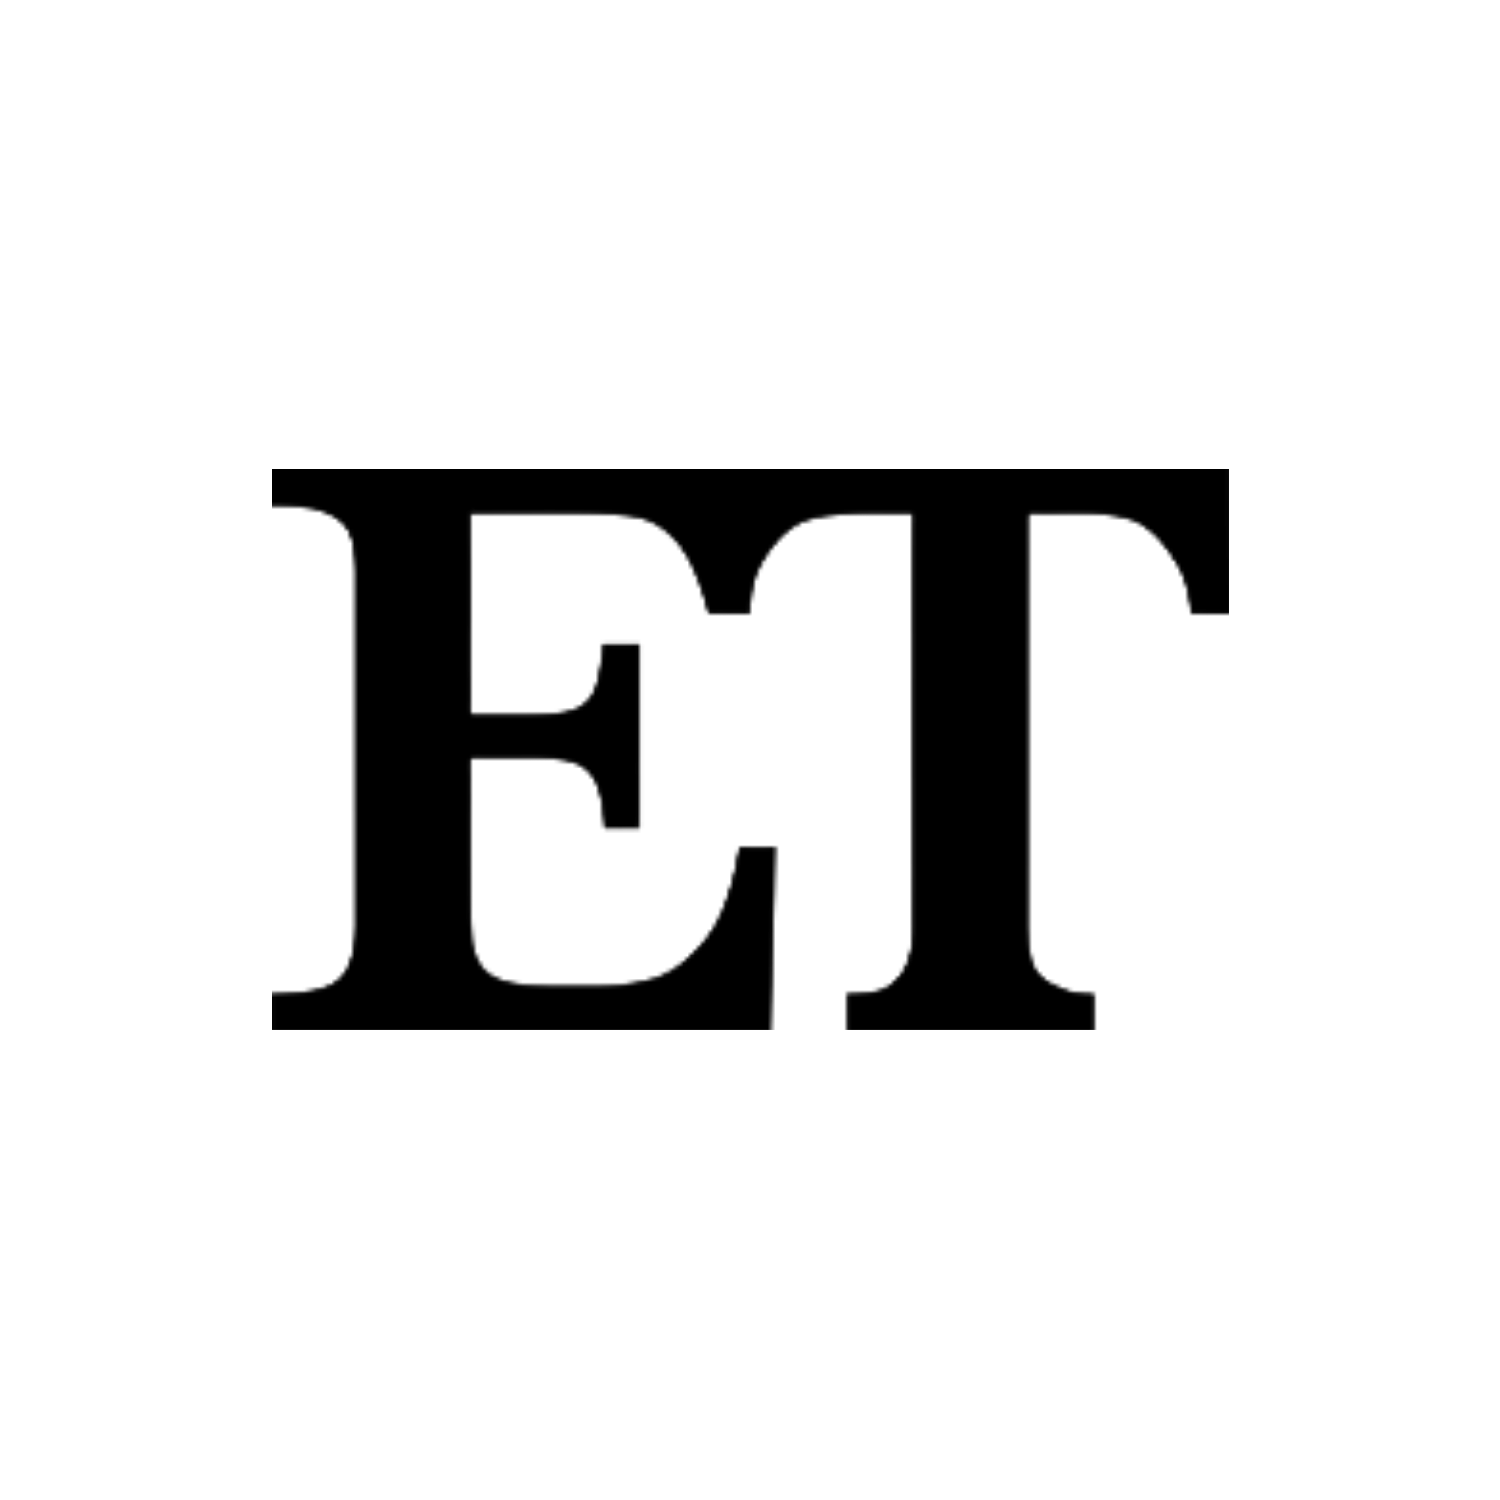 ET logo